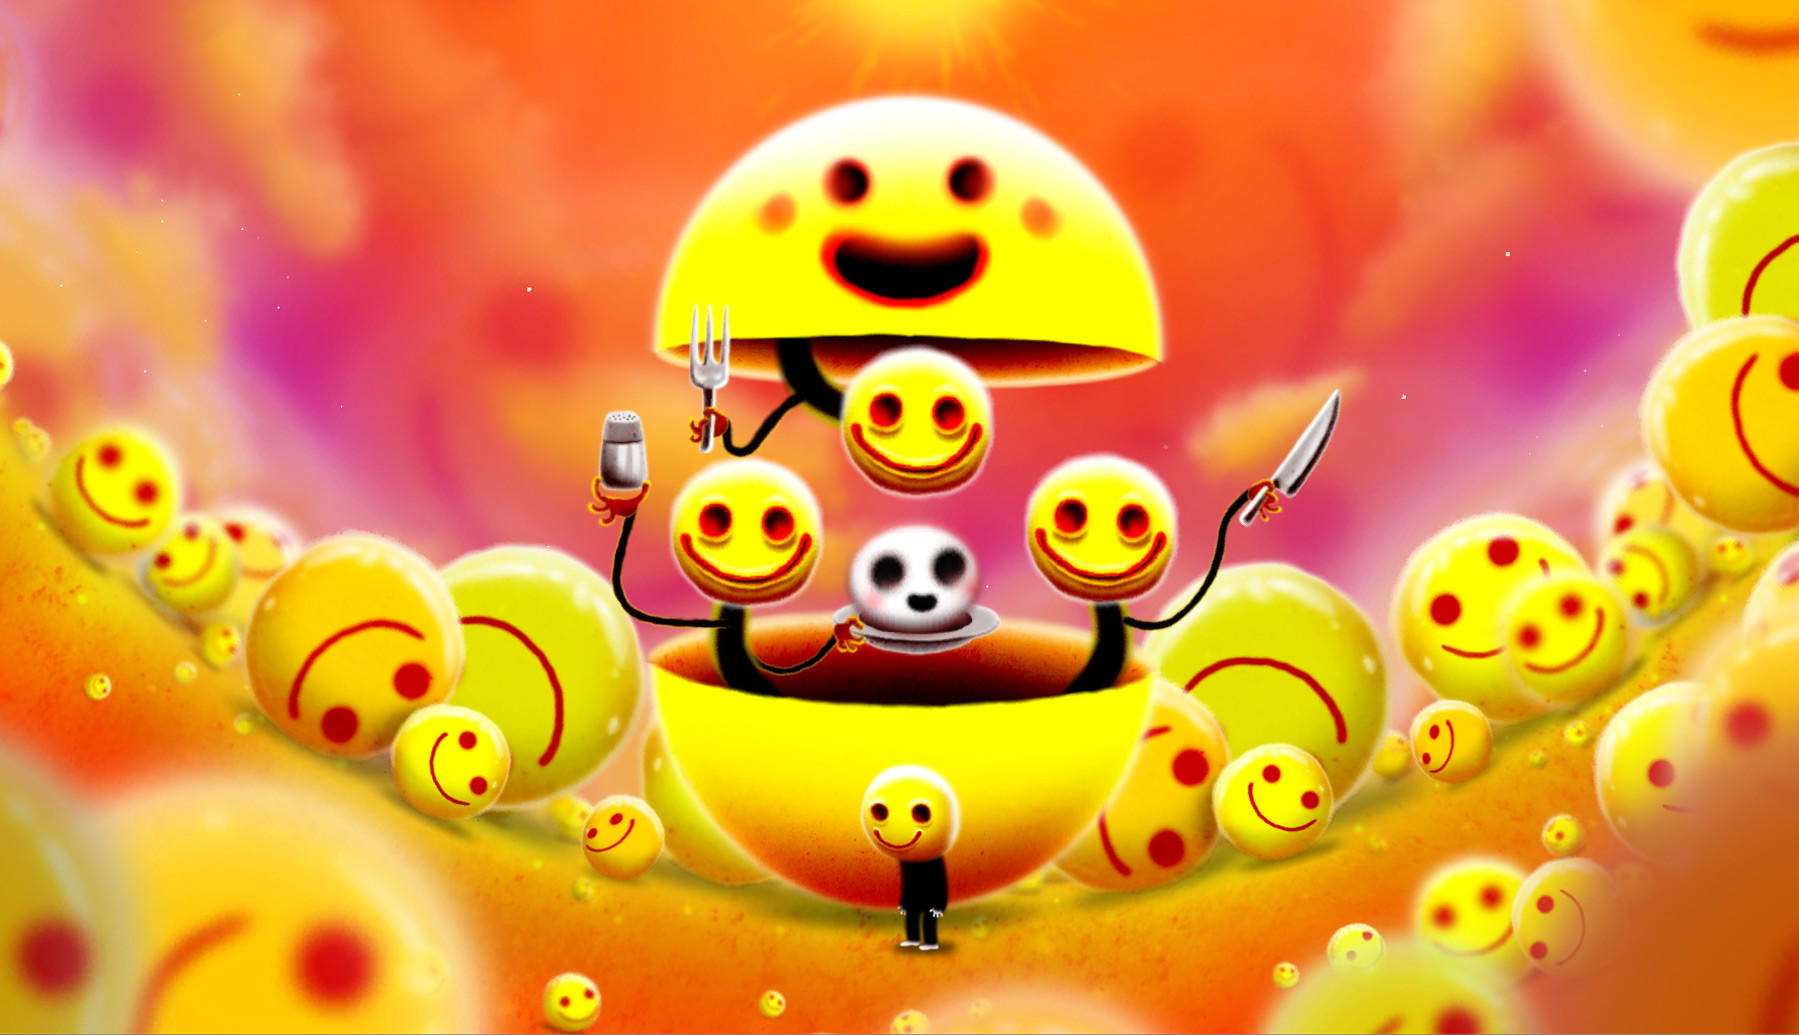 Screenshot 1 of jogo feliz 